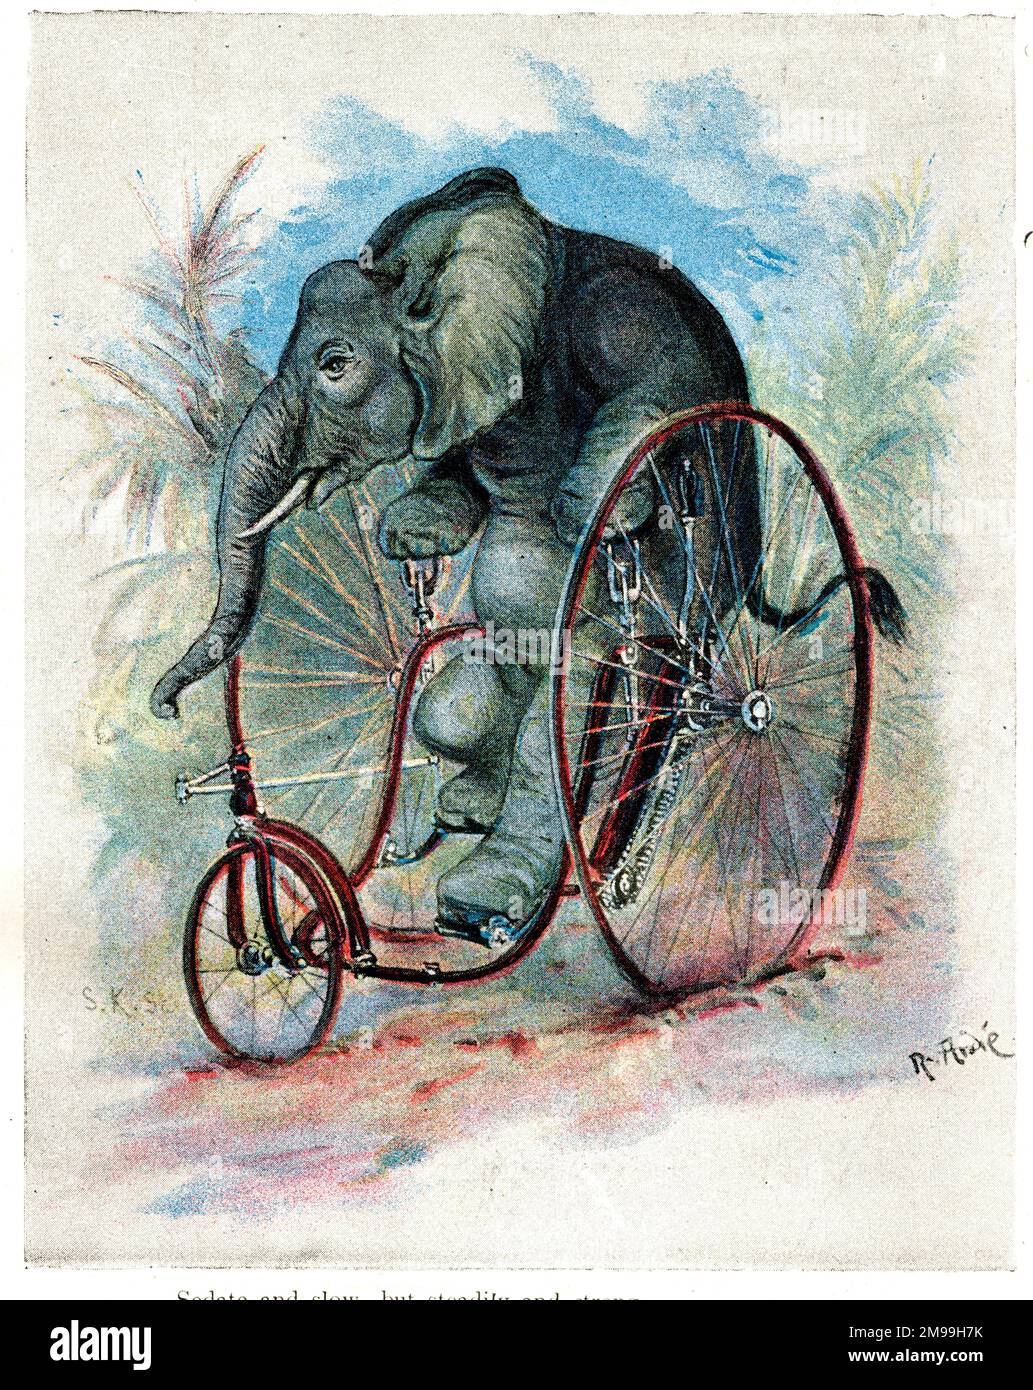 Zoo Tiere auf dem neuesten Stand auf Fahrrädern - Elefant auf einem Velocipede. Stockfoto